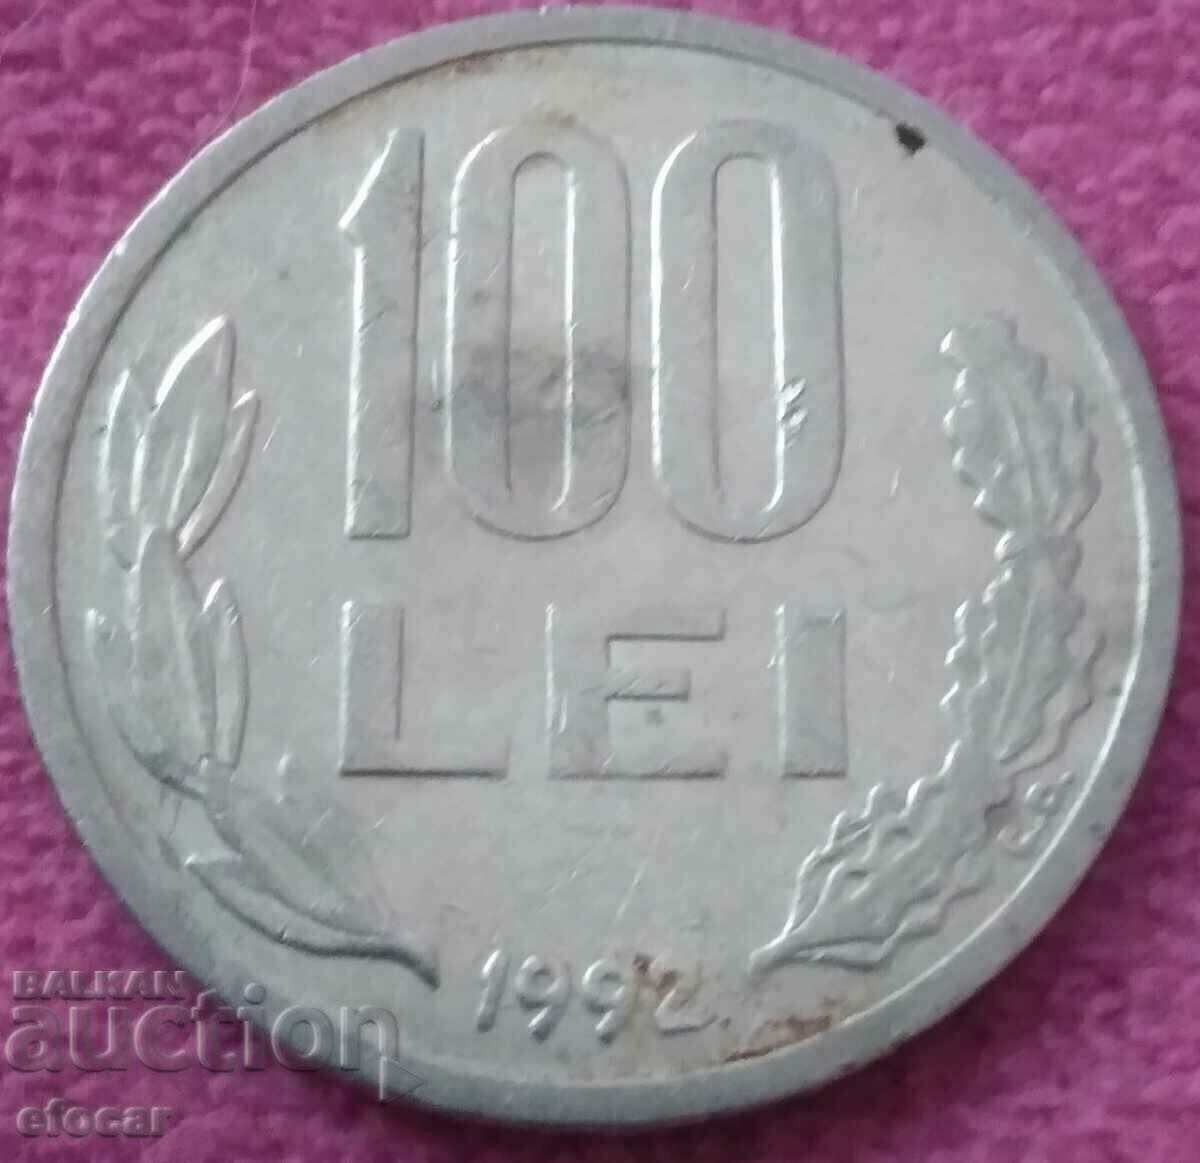 100 лей Румъния 1992 старт от 0,01